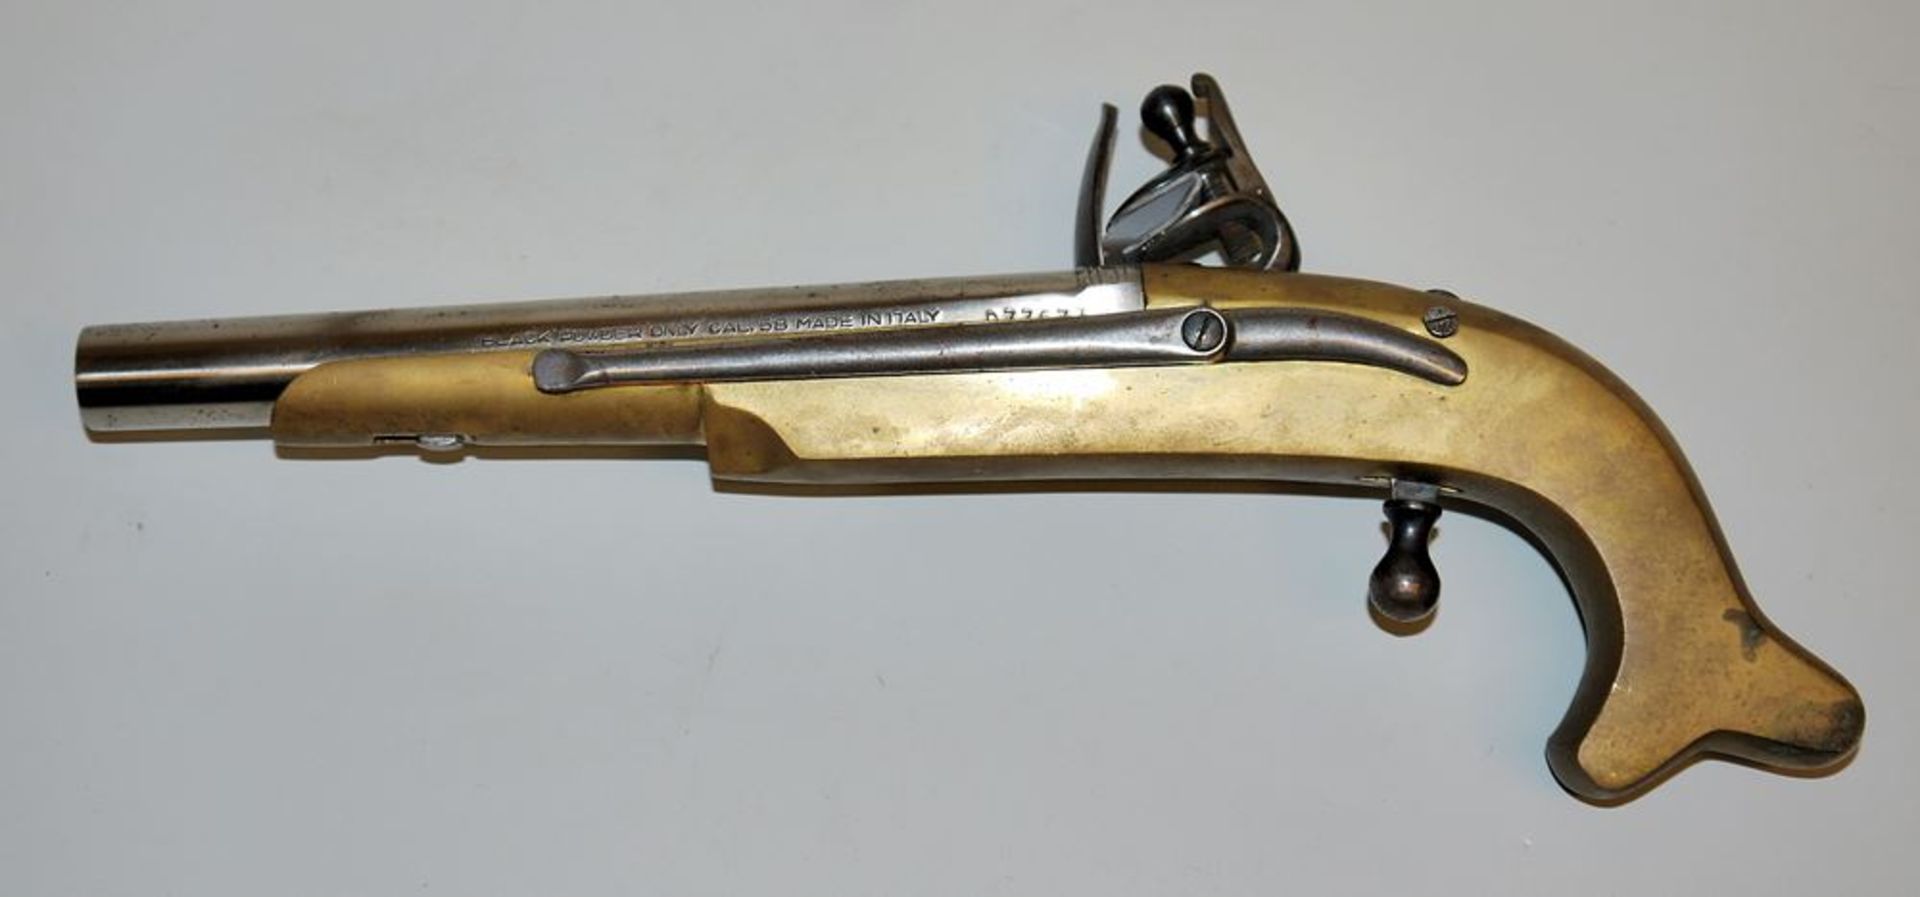 Caplock pistol, 20th century replica - Image 2 of 2